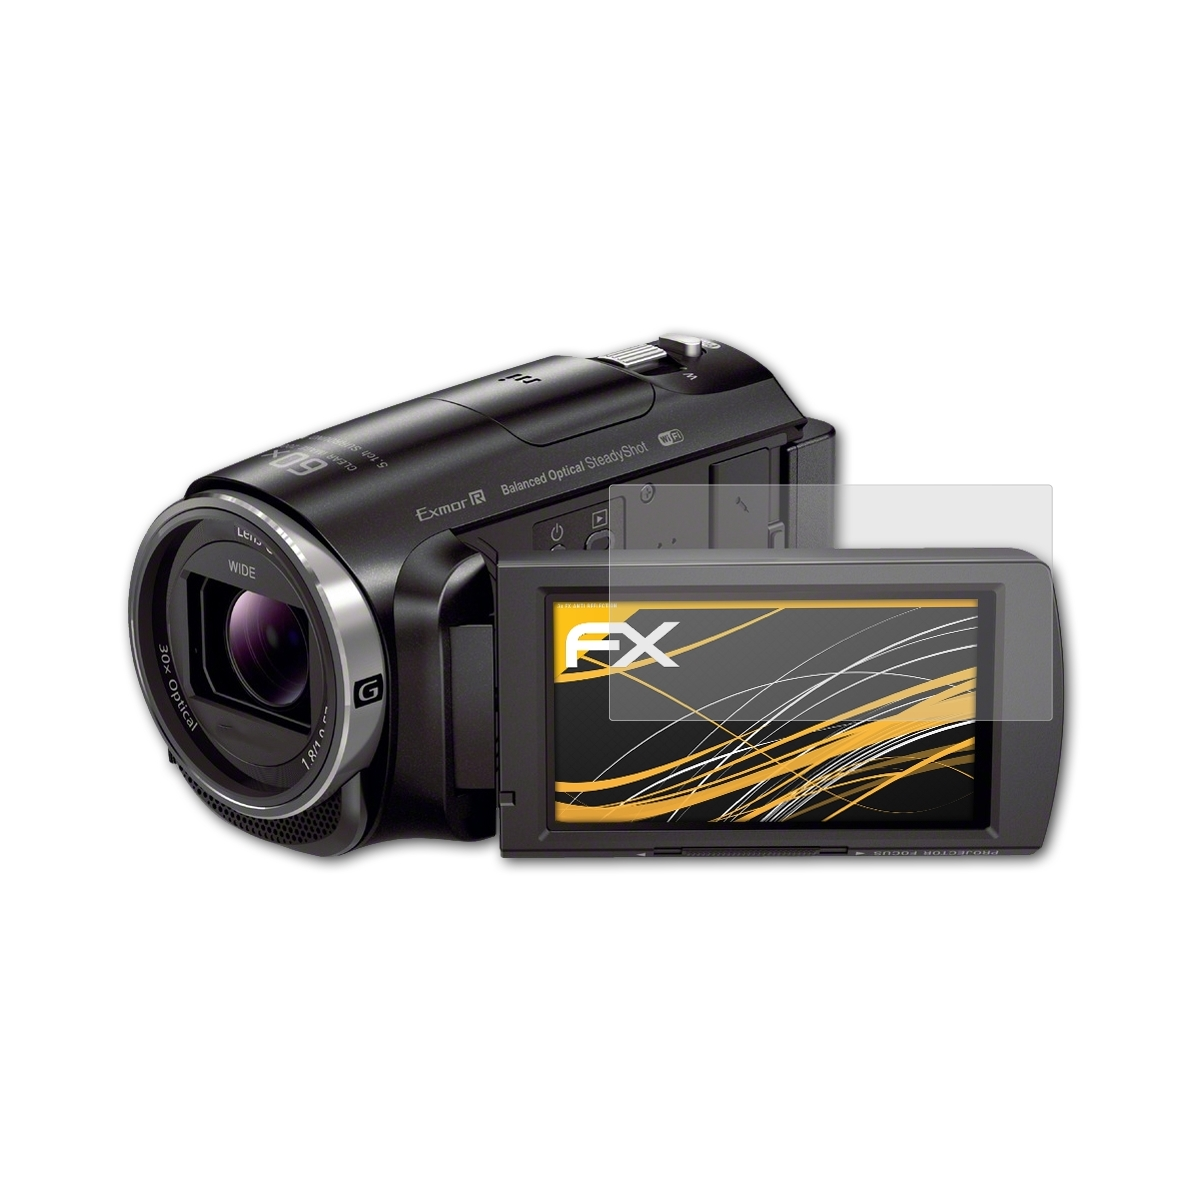 FX-Antireflex Sony ATFOLIX 3x Displayschutz(für HDR-PJ620)